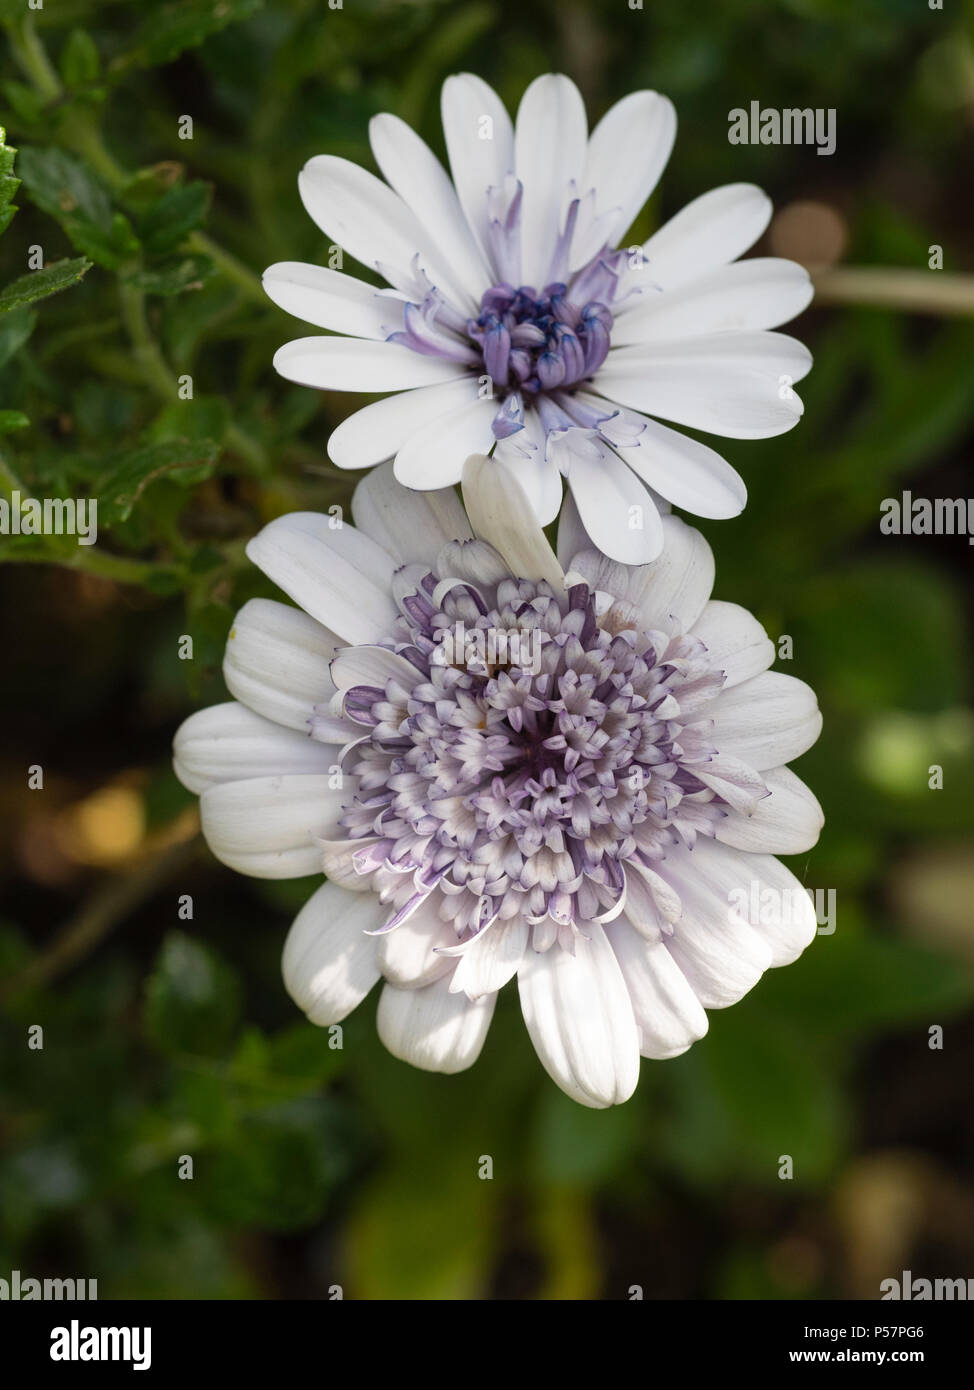 Argenteo centro raddoppiato e white ray petali della fioritura estiva, metà ardito perenne cape daisy, Osteospermum ecklonis '3d'Argento" Foto Stock